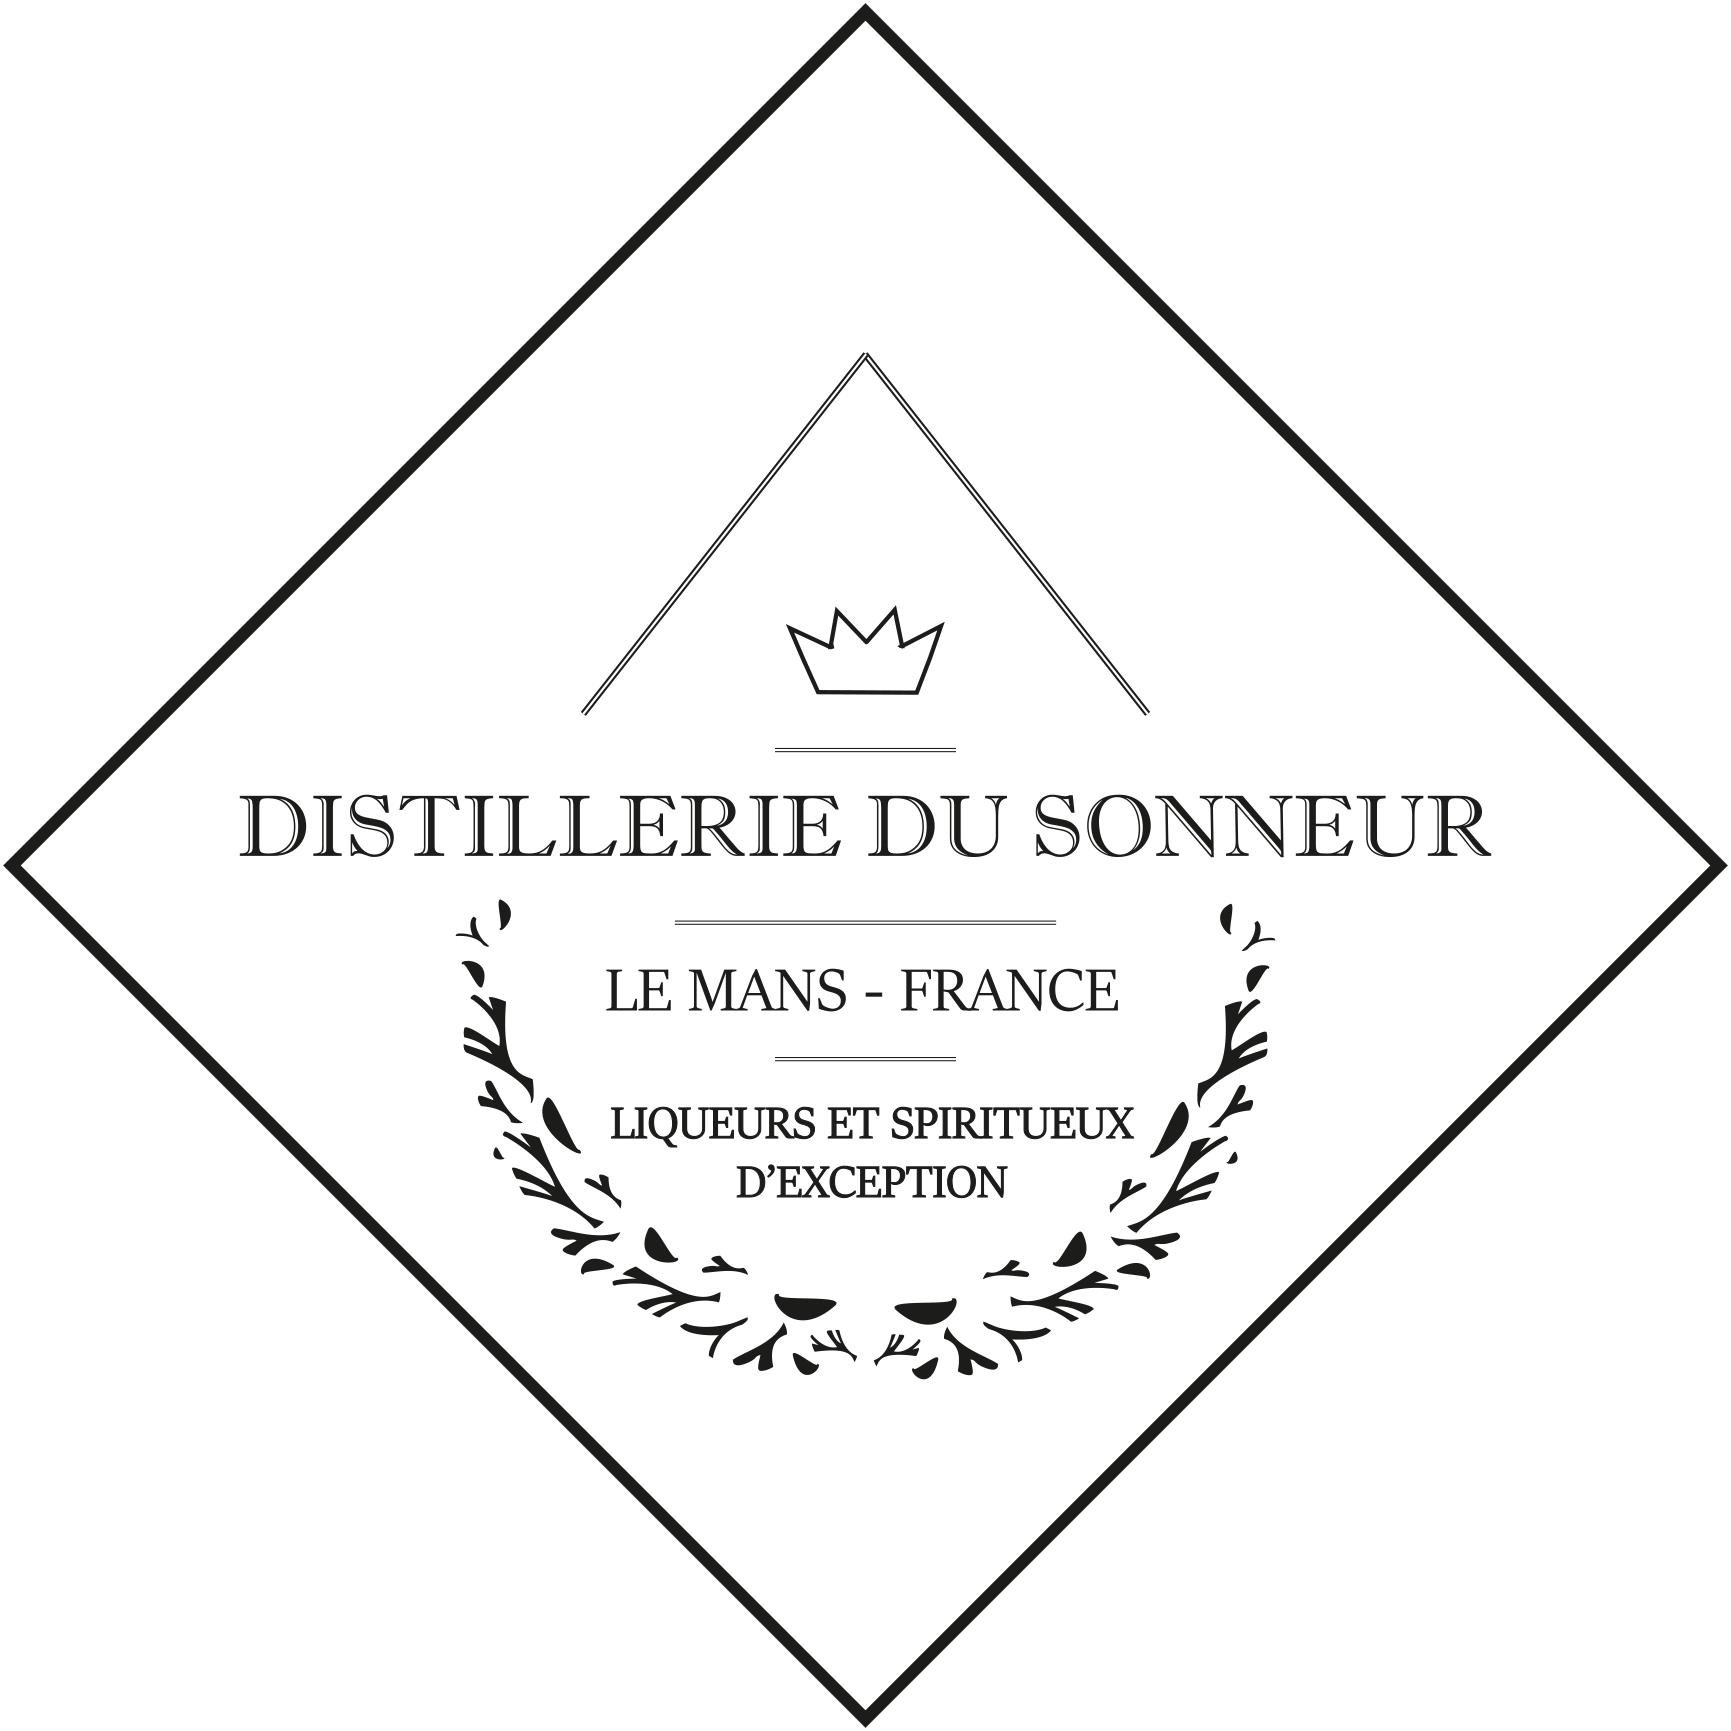 Distillerie du Sonneur